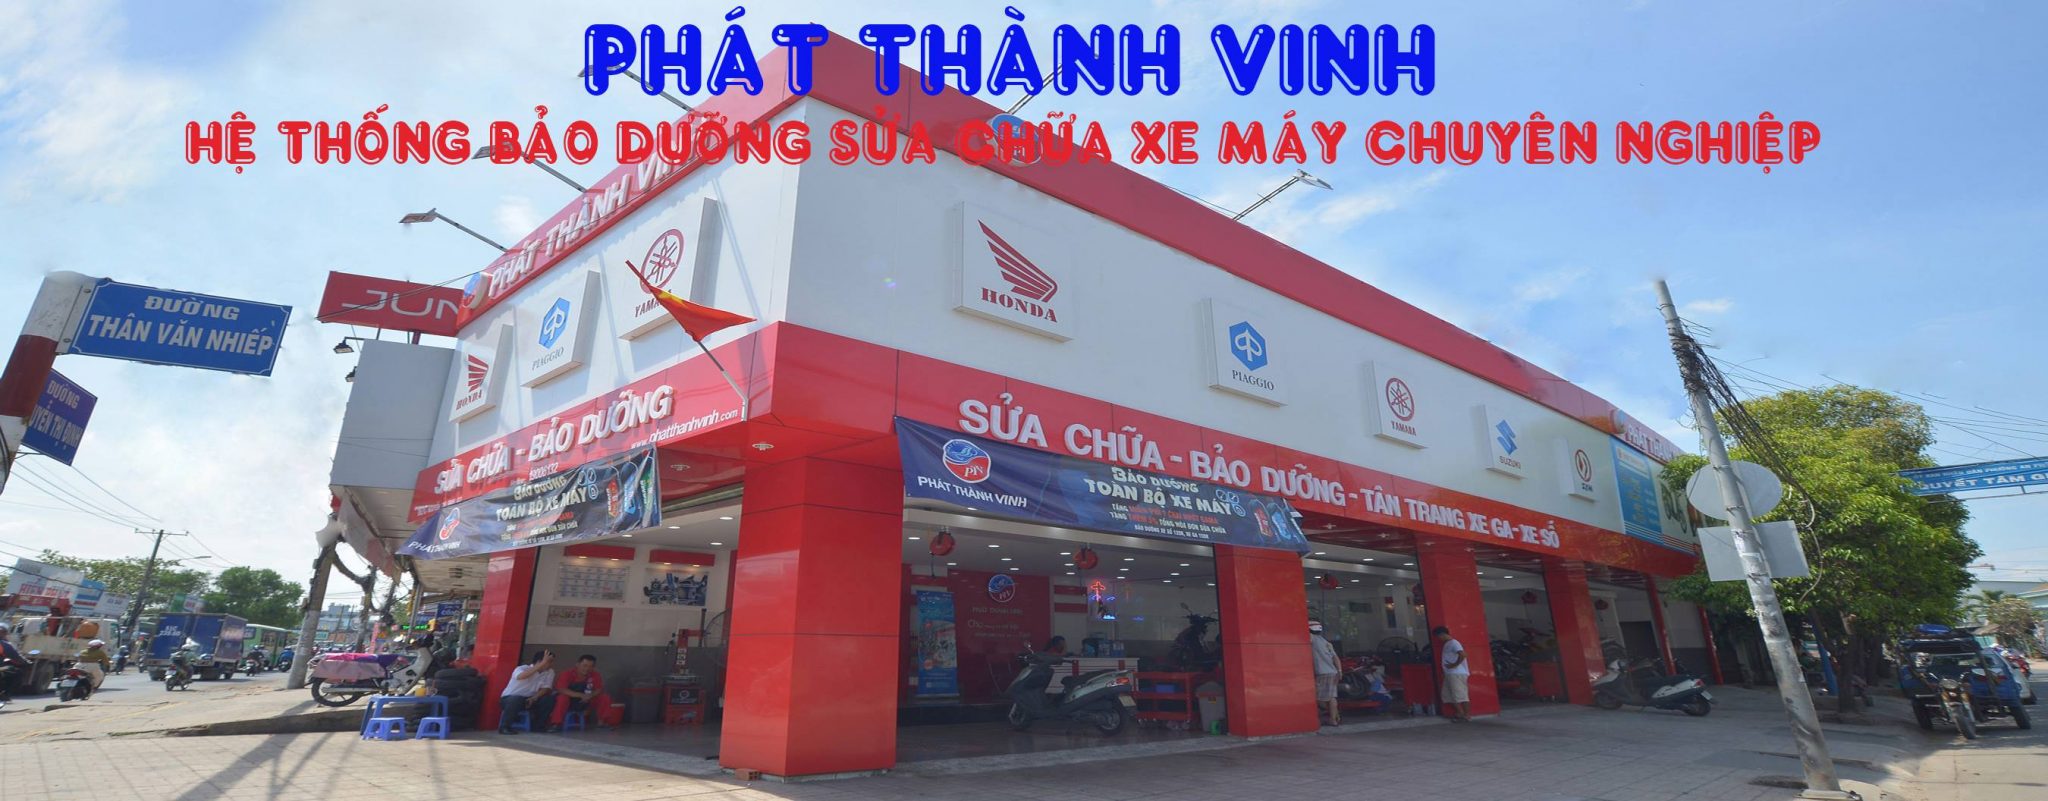 Cửa hàng phụ tùng xe máy TPHCM - Phát Thành Vinh | Nguồn: Phát Thành Vinh